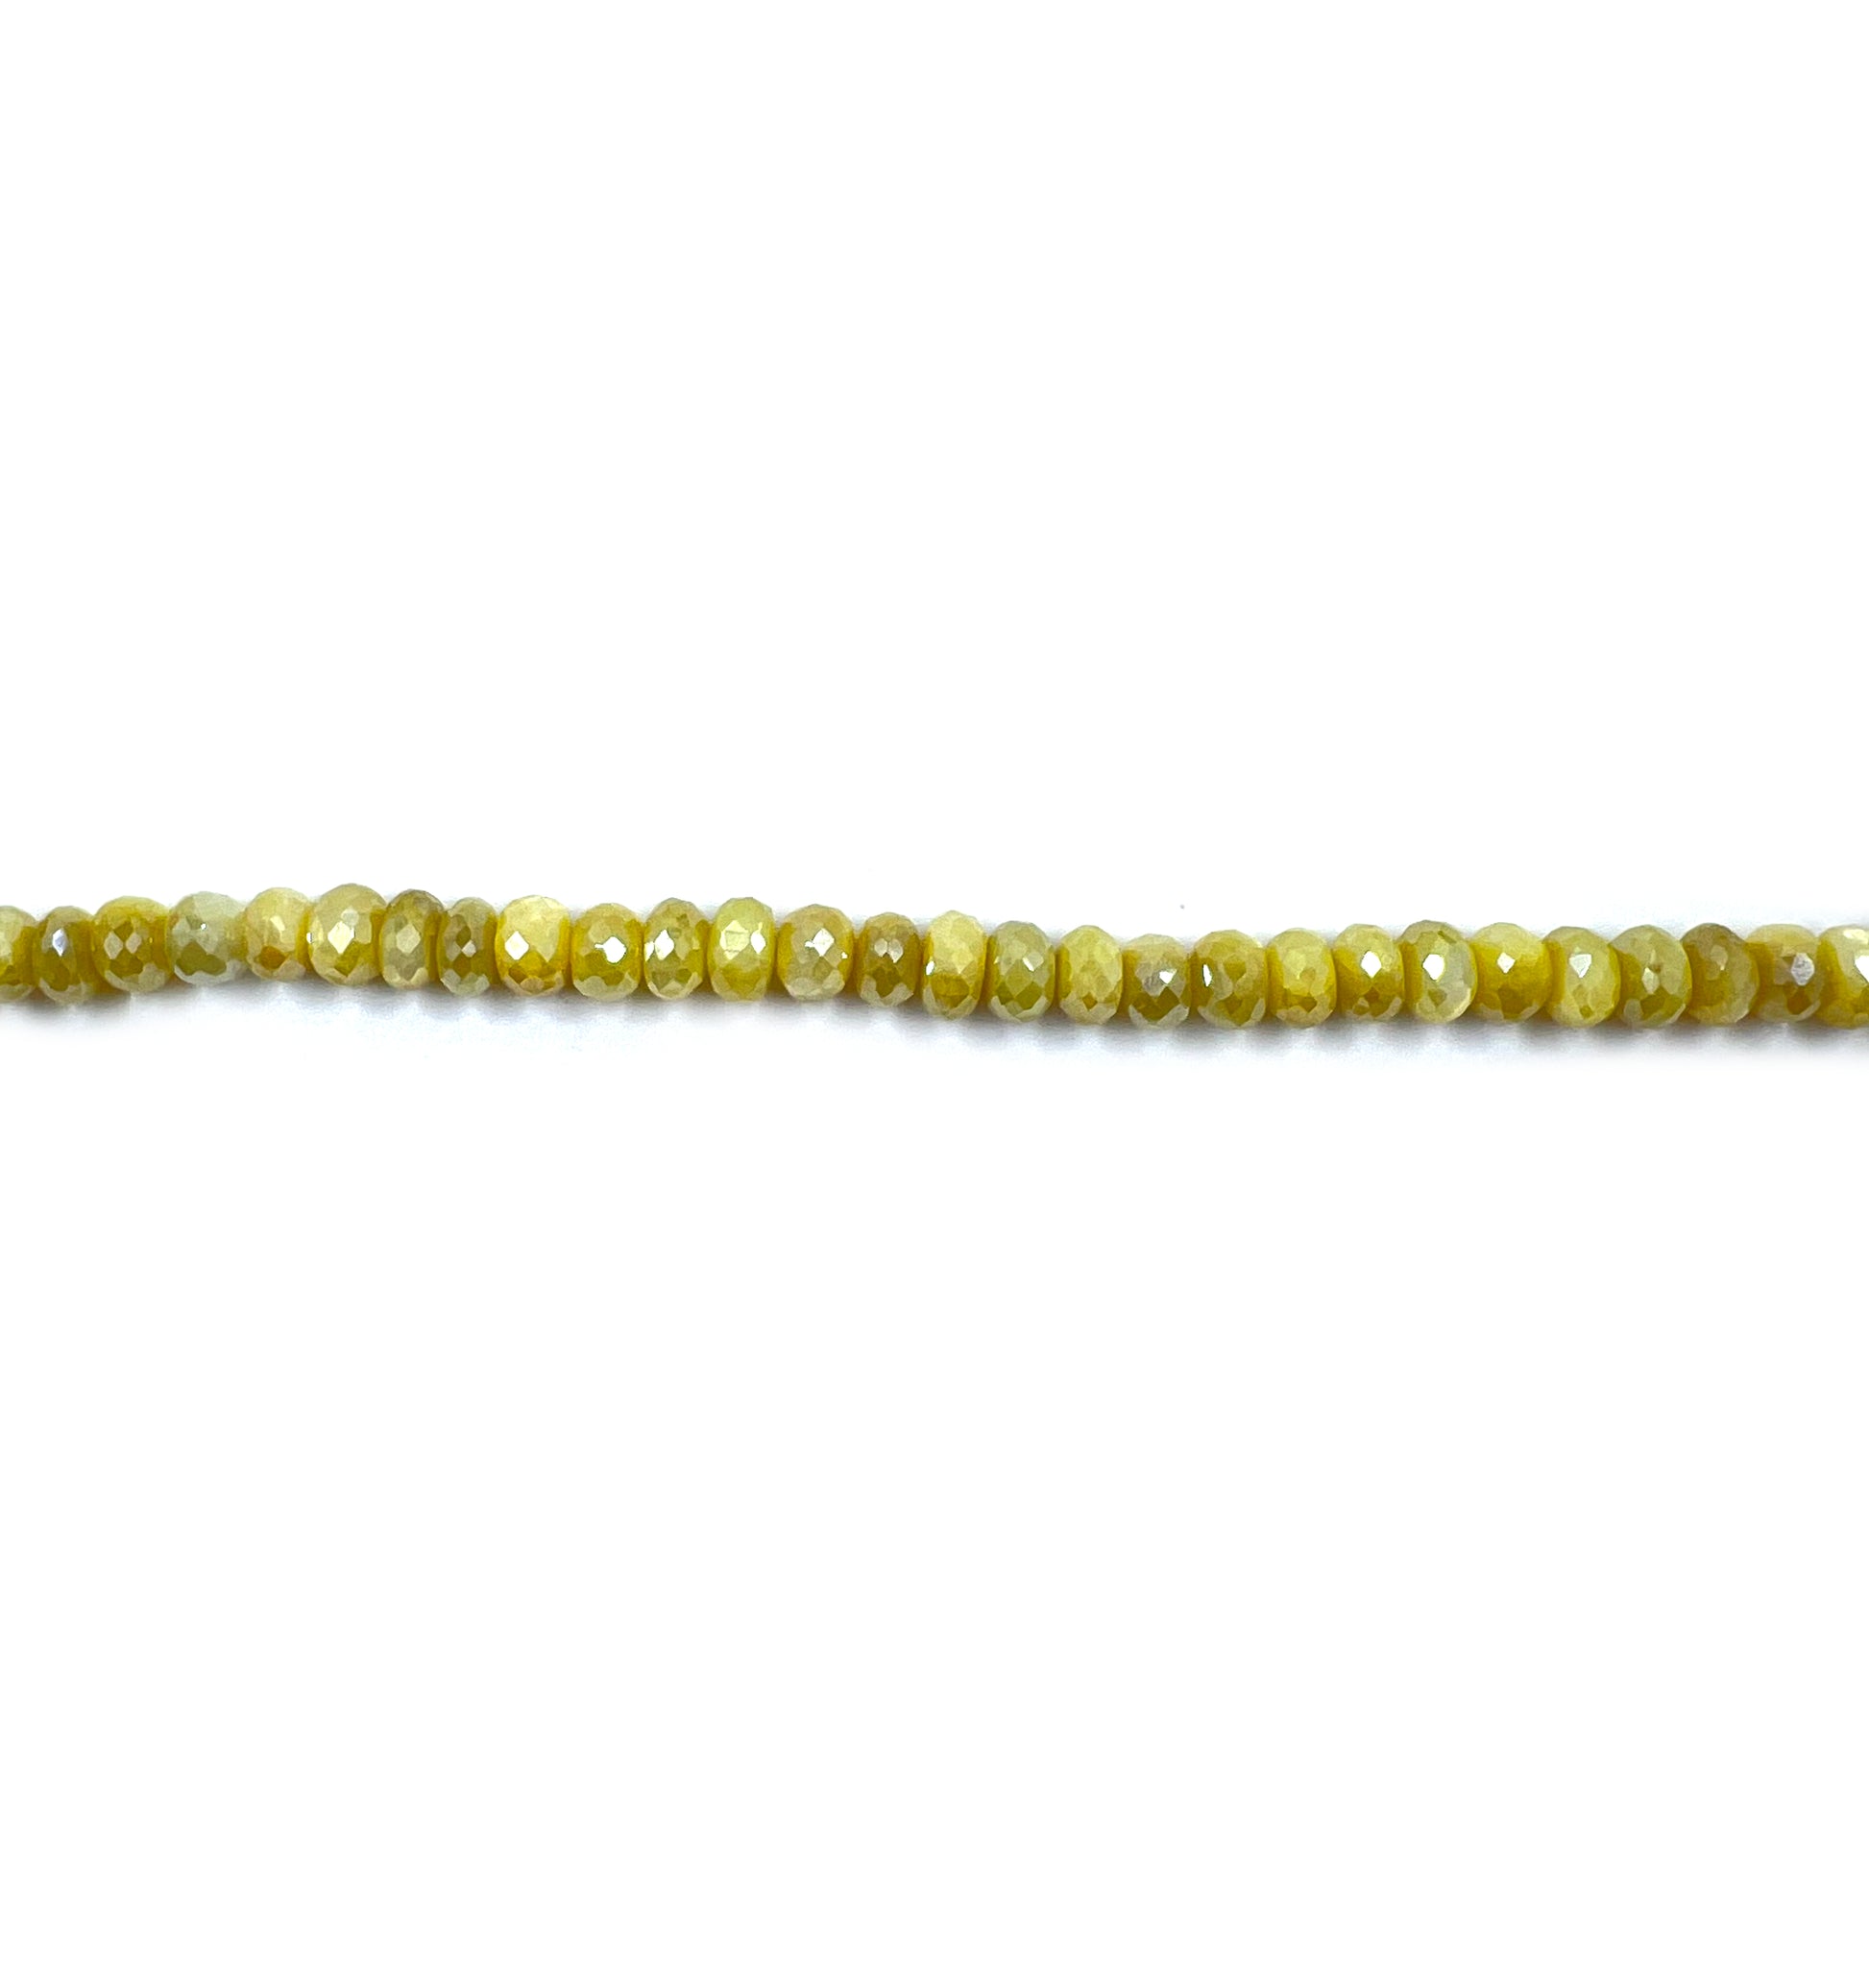 Coated Moonstone Gemstone Beads